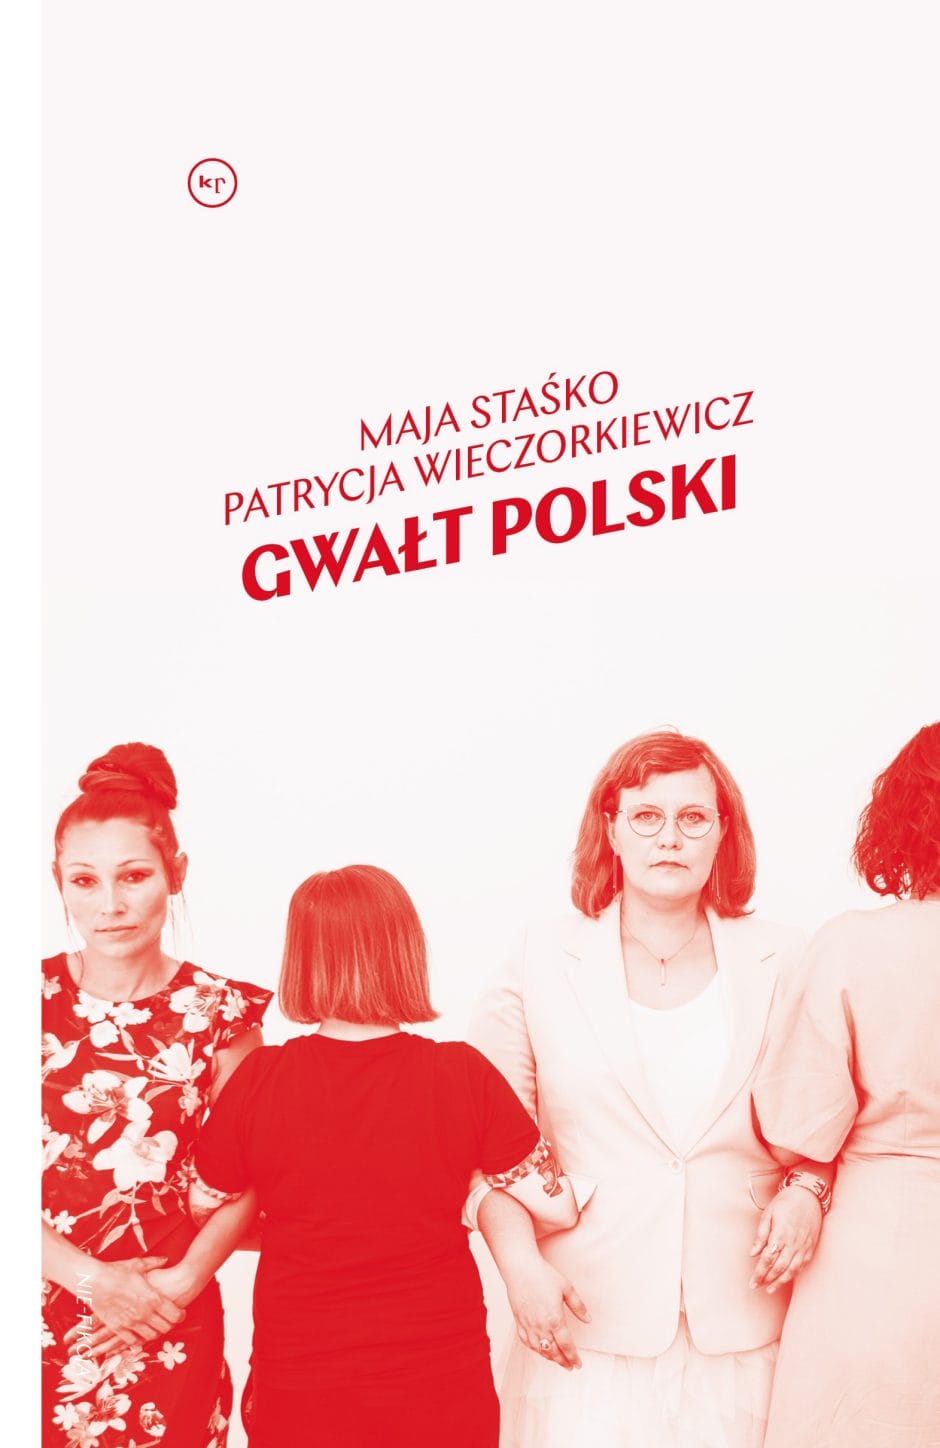 Maja Staśko, Patrycja Wieczorkiewicz: Gwałt polski